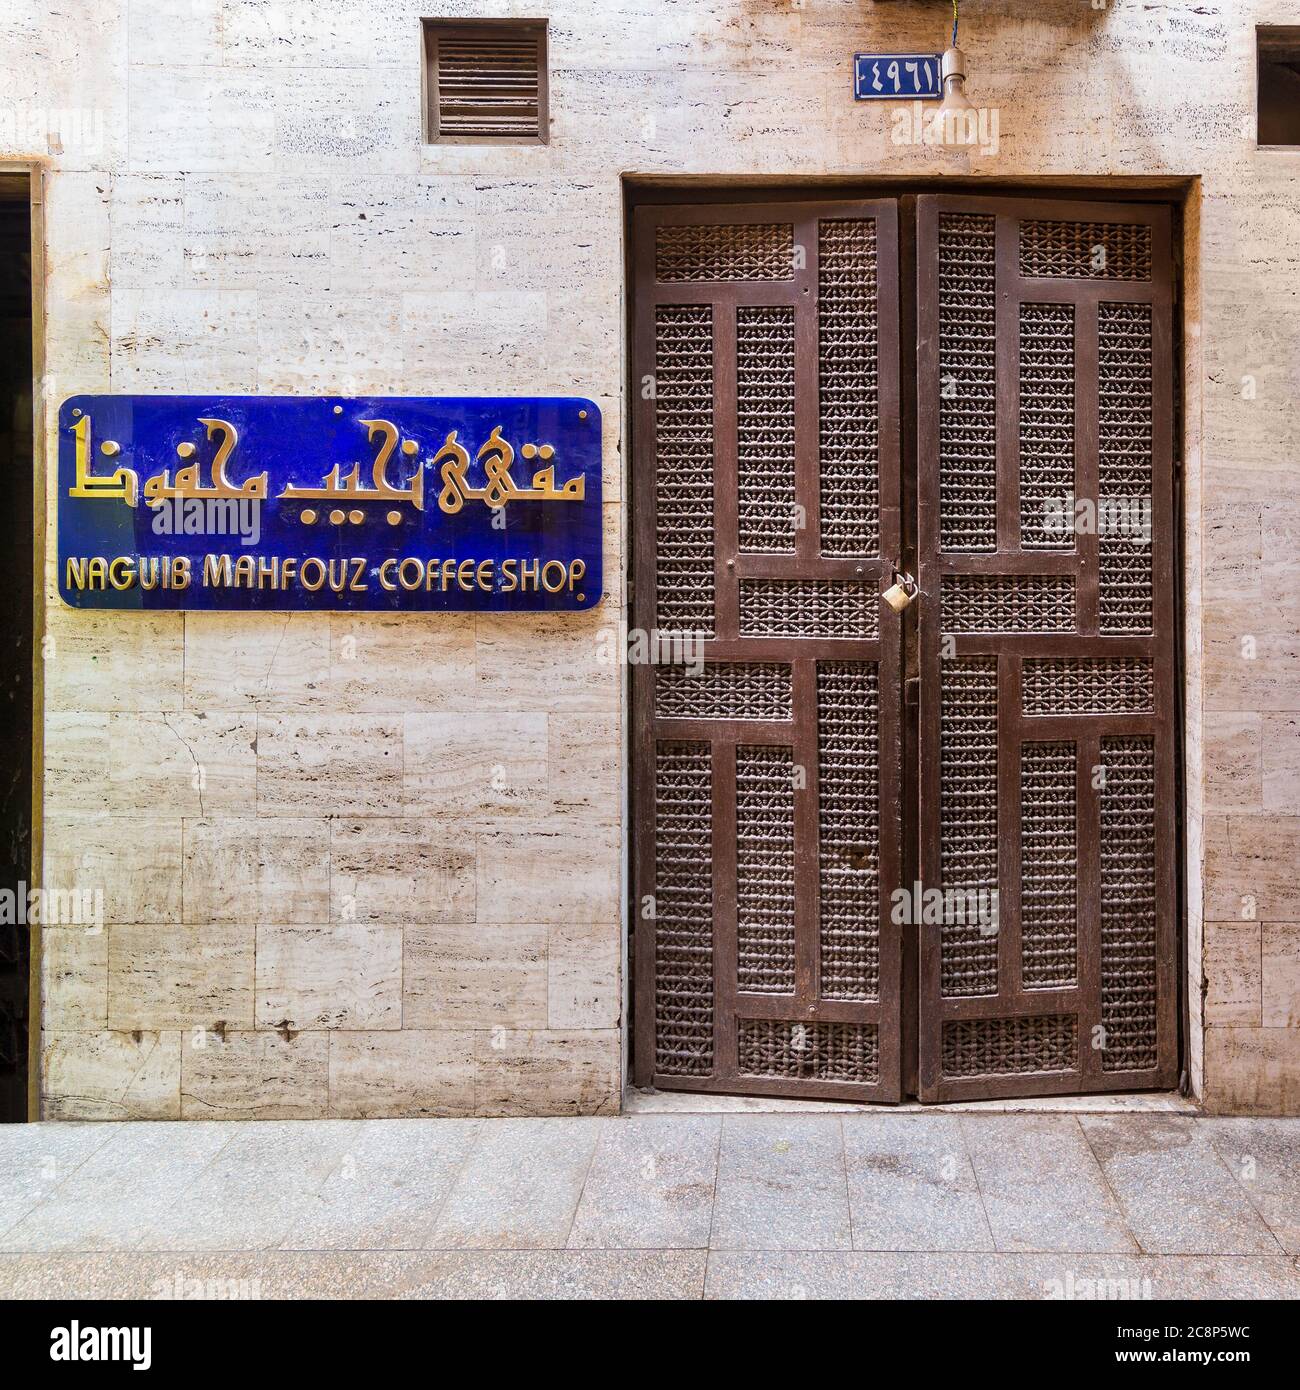 El Cairo, Egipto - Junio 26 2020: Entrada de la famosa cafetería Naguib Mahfouz, situada en la histórica era Mamluk Khan al-Khalili famoso bazar y souq, cerrado durante el cierre de la calle Covid-19 Foto de stock